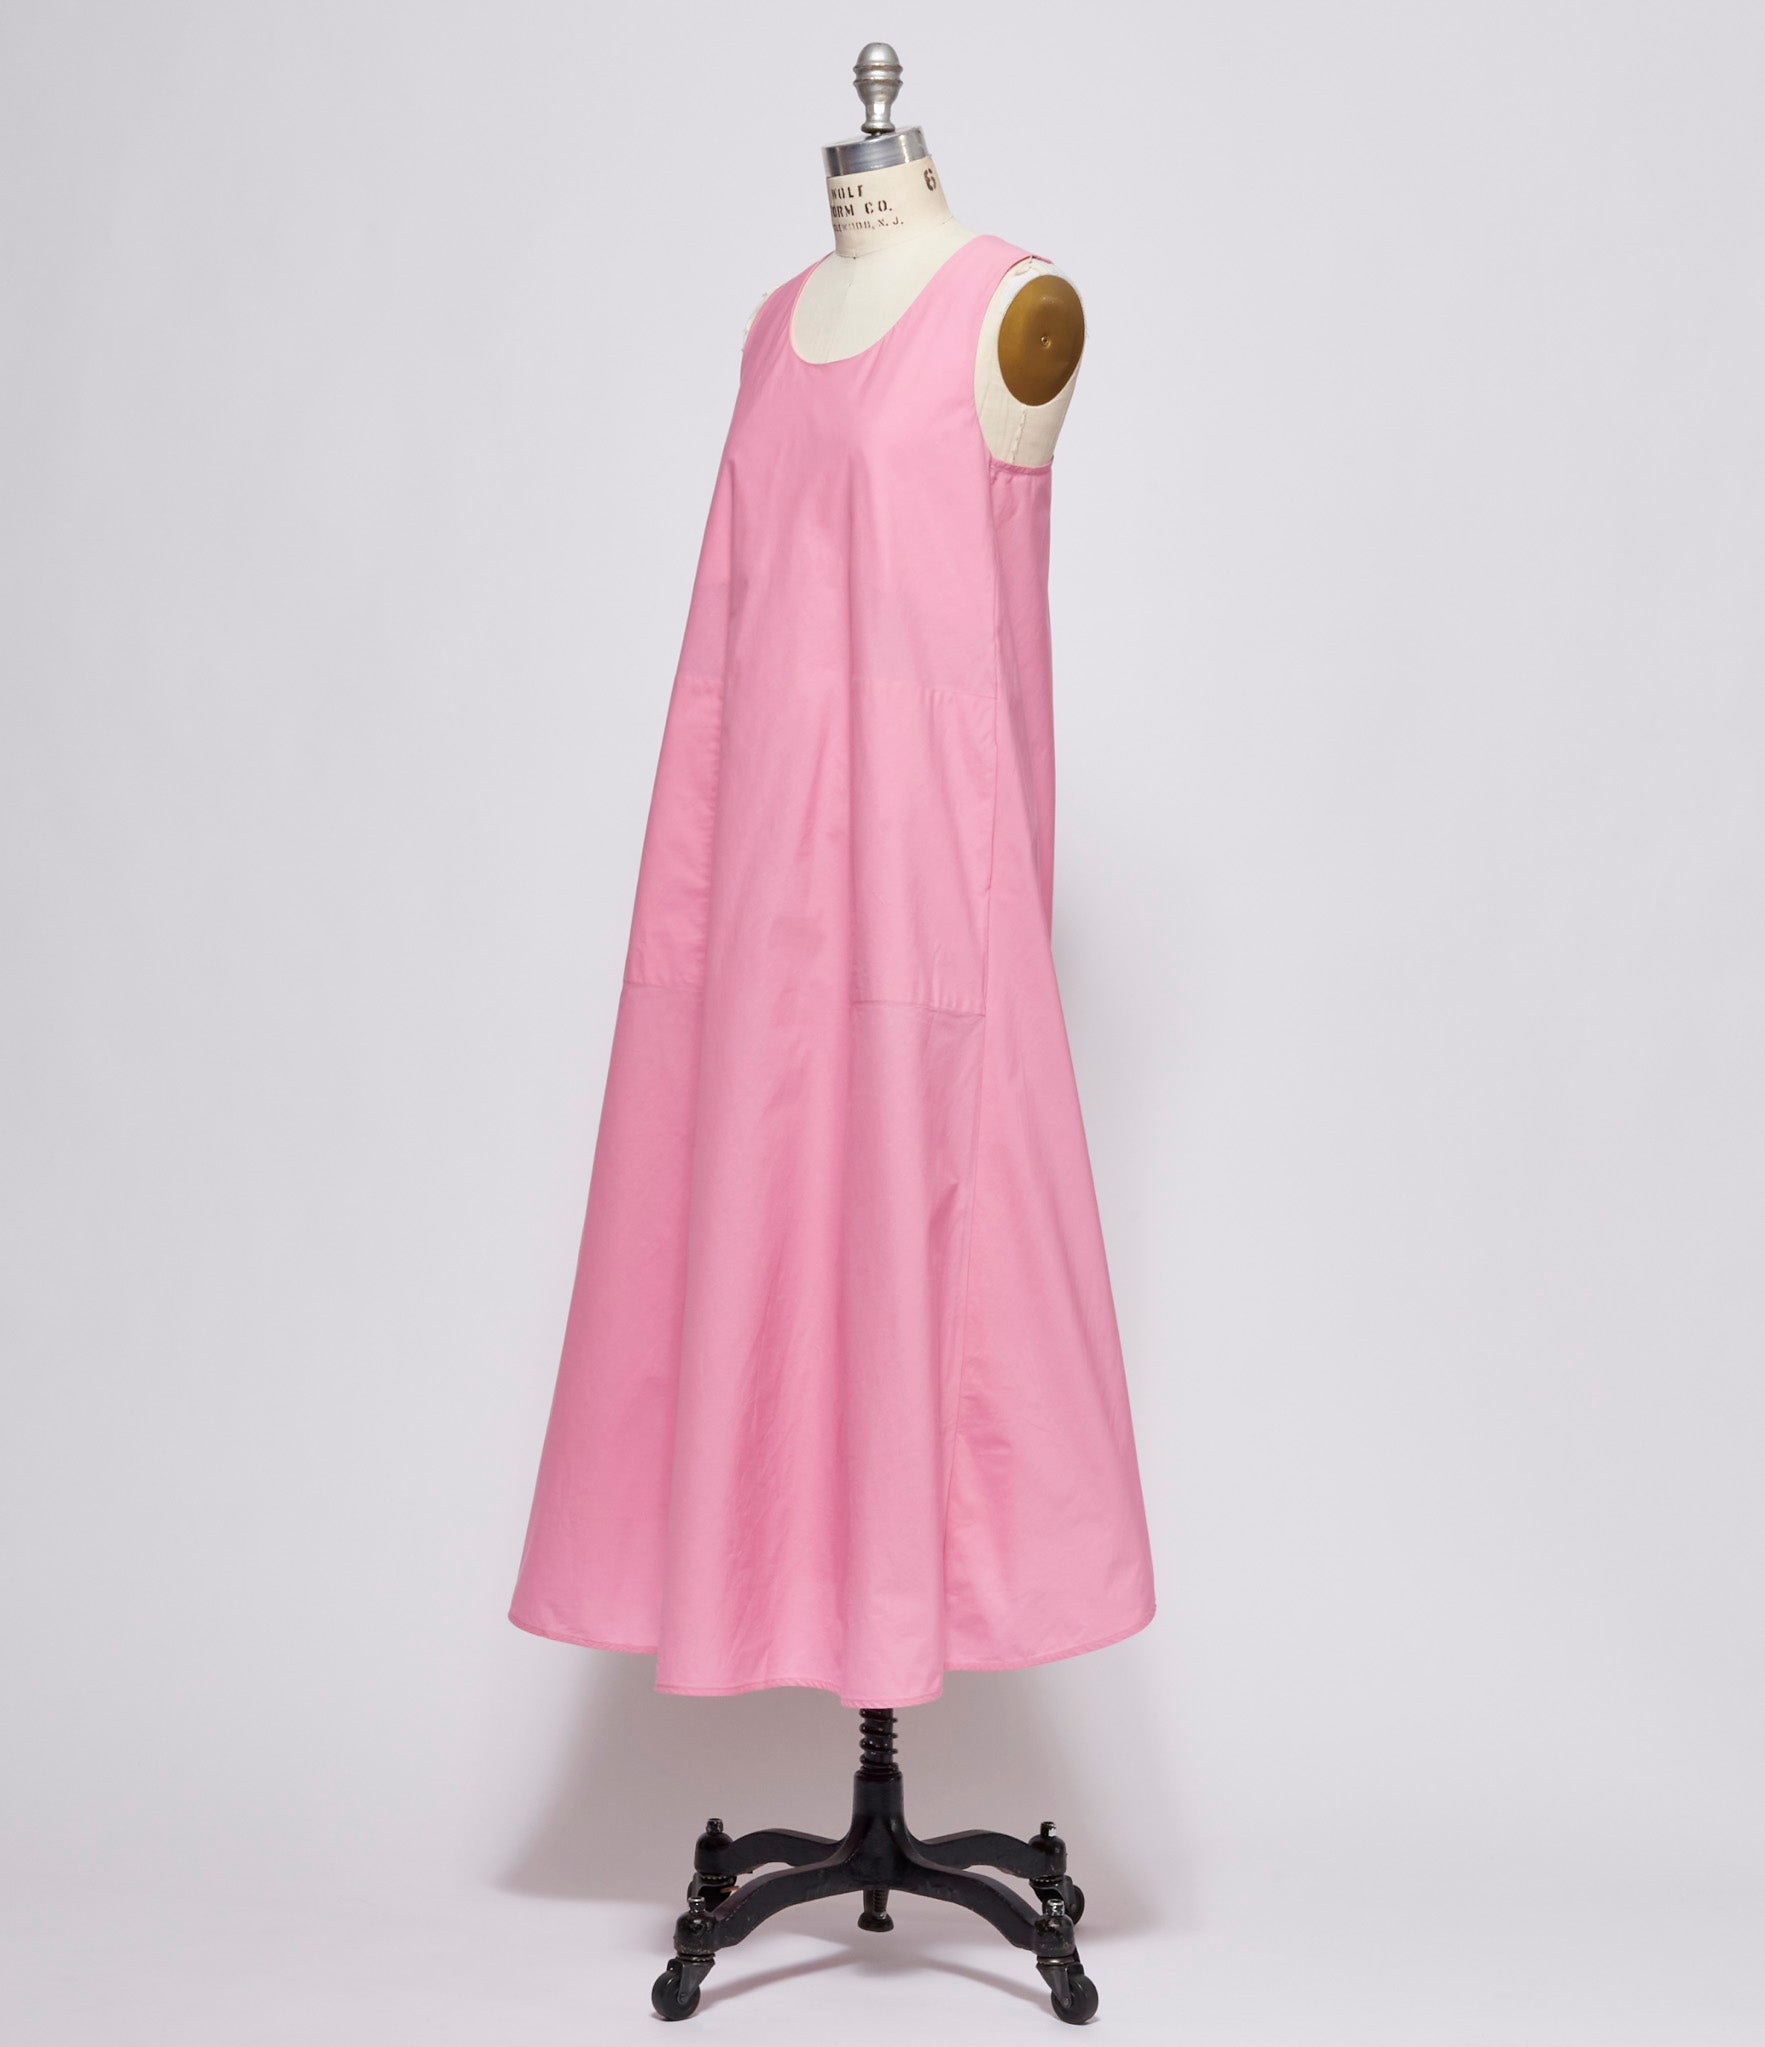 toogood Womens LW Textured Cotton Gum/Pink Miller Dress